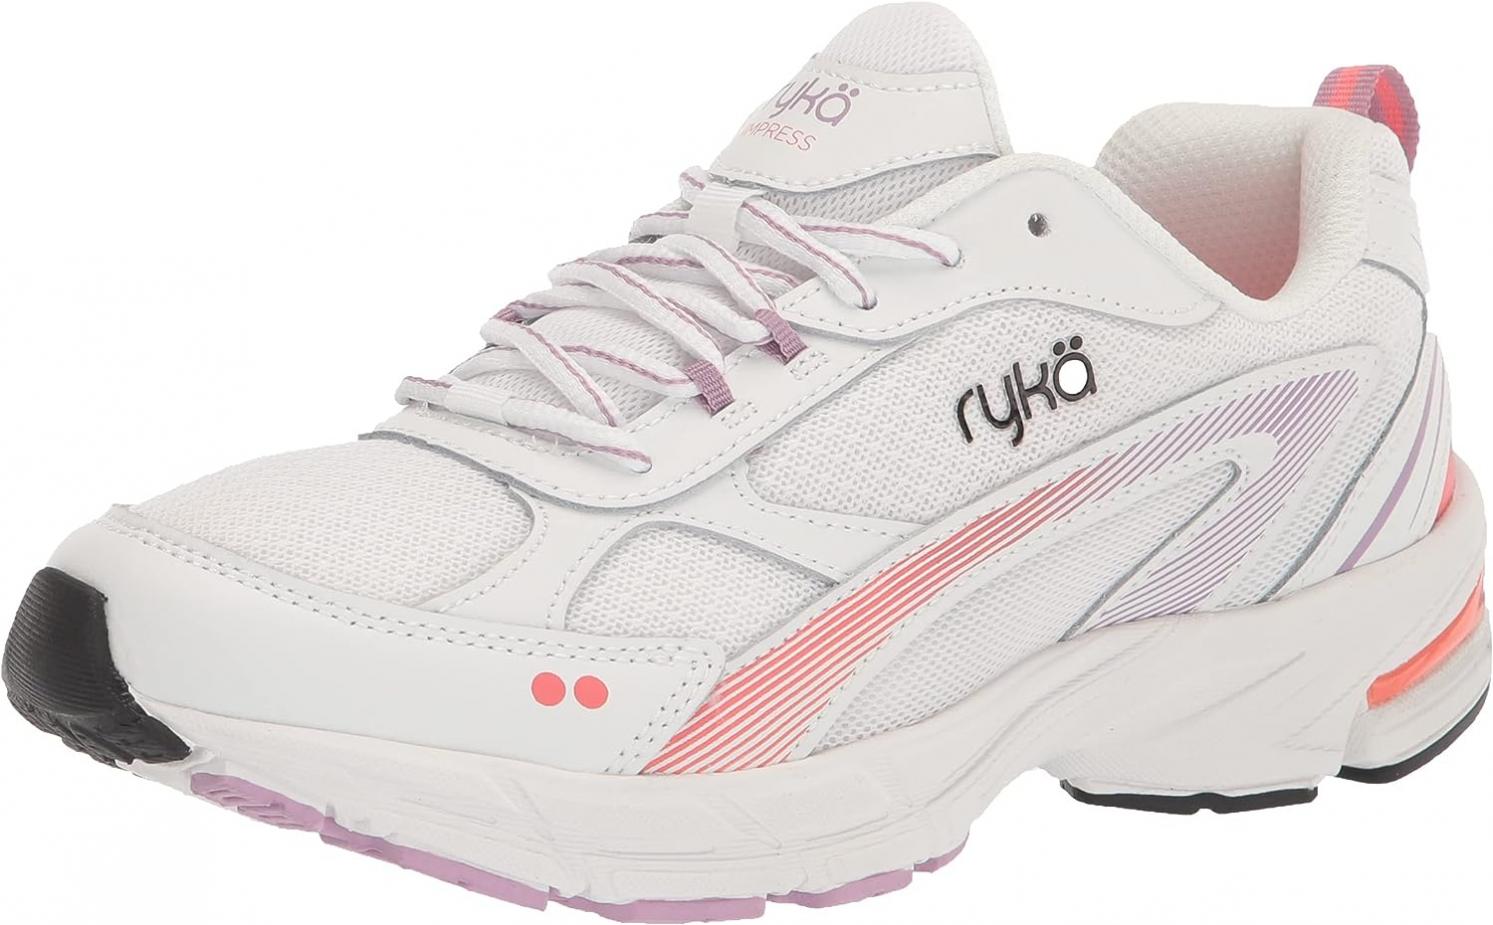 Ryka Women's Impress Walking Shoe Sneaker